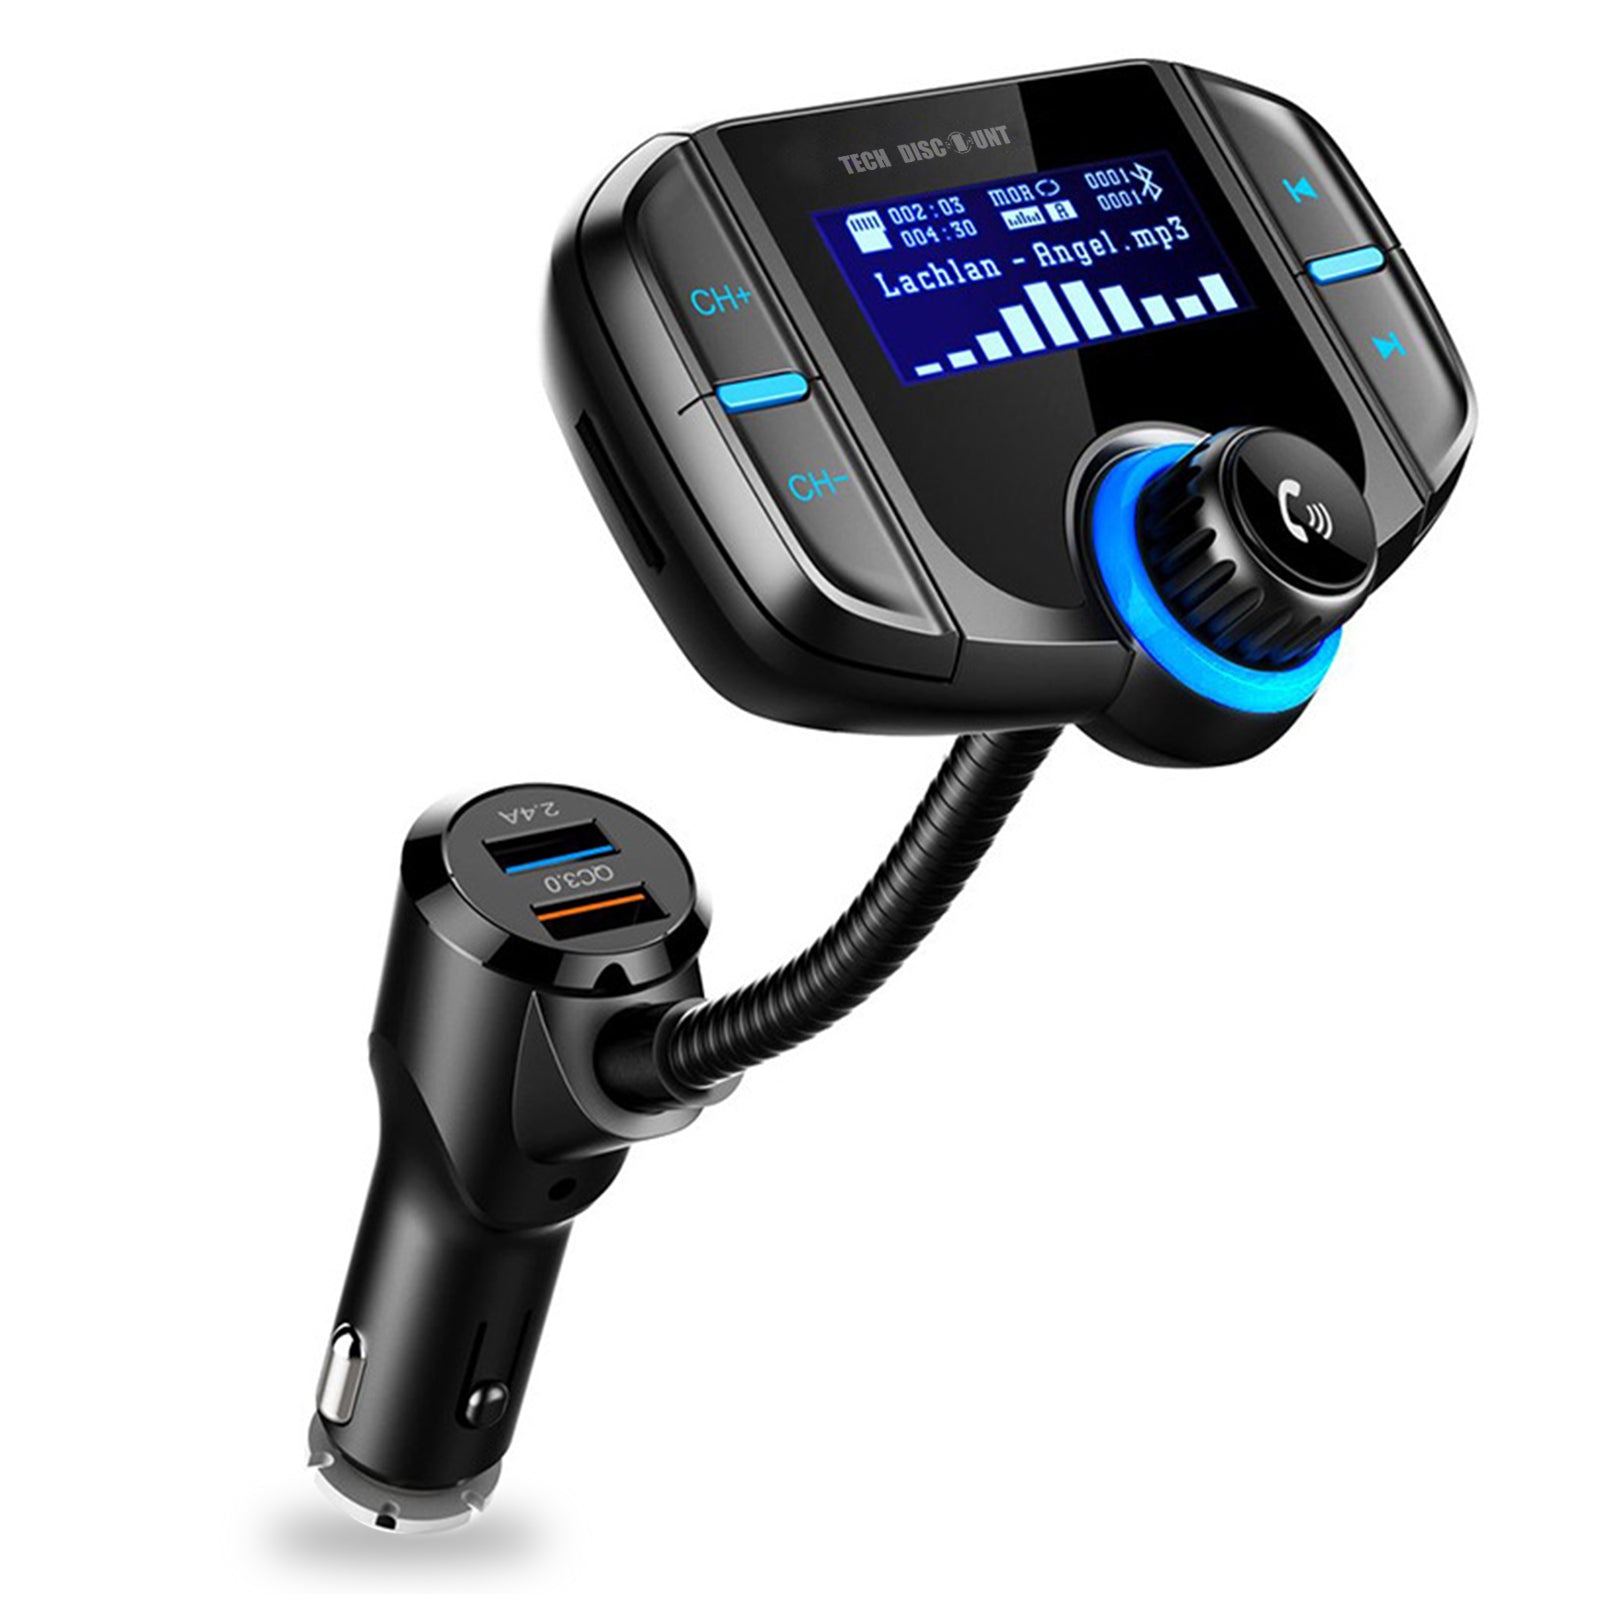 TD® KIT transmetteur FM Bluethooth USB charge rapide pour voiture - Accessoire auto double chargeur USB lecteur MP3, Radio, Carte SD